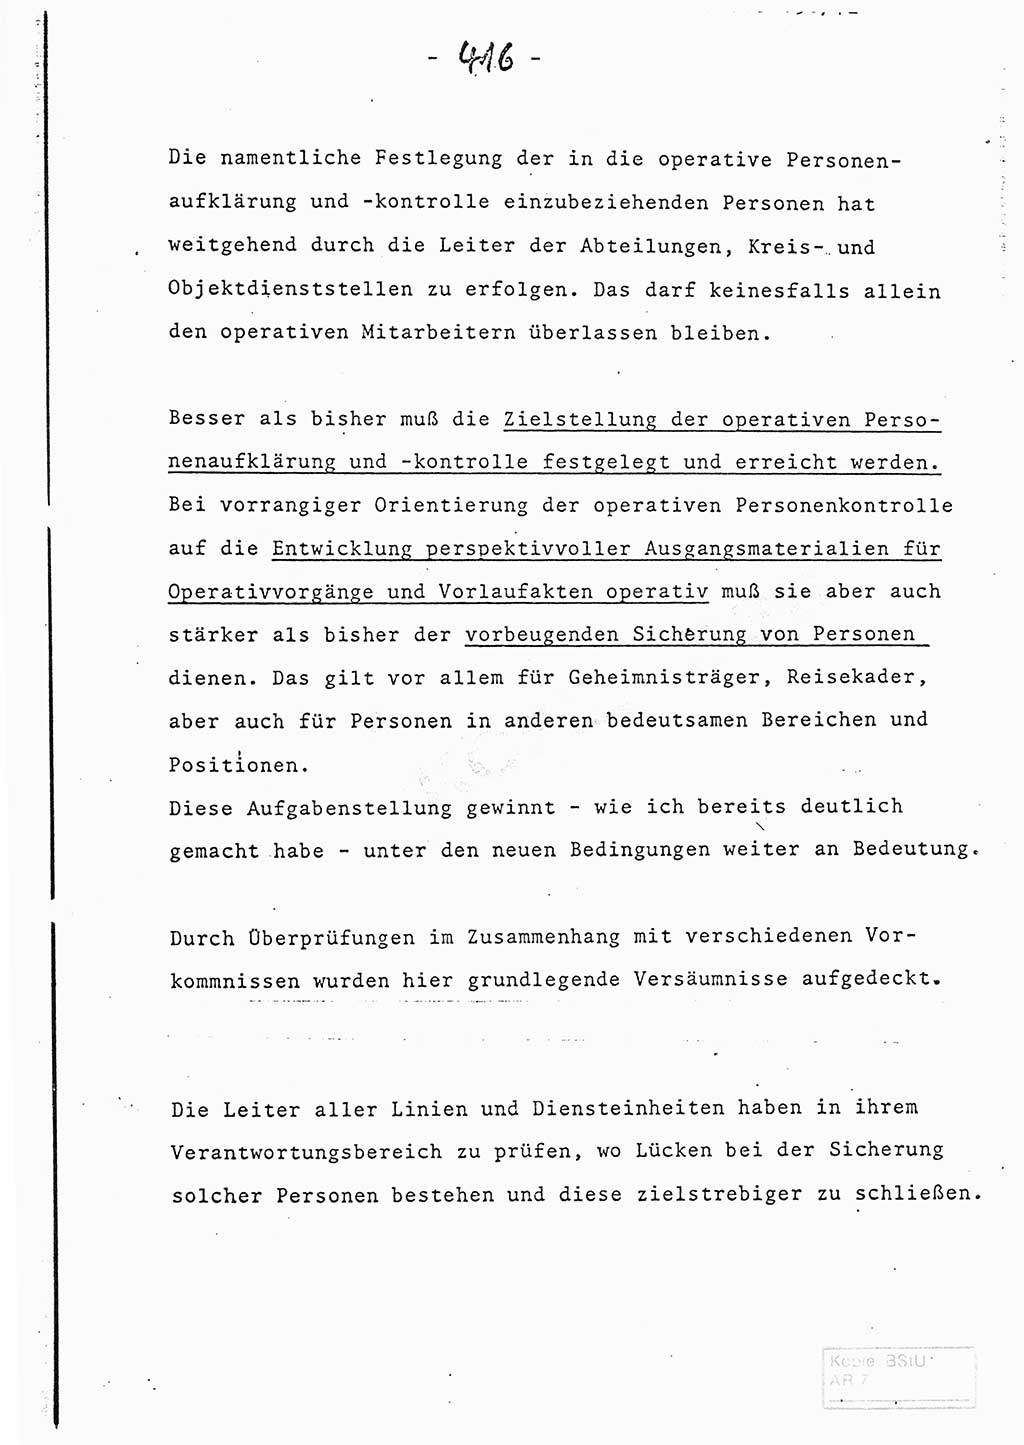 Referat (Entwurf) des Genossen Minister (Generaloberst Erich Mielke) auf der Dienstkonferenz 1972, Ministerium für Staatssicherheit (MfS) [Deutsche Demokratische Republik (DDR)], Der Minister, Geheime Verschlußsache (GVS) 008-150/72, Berlin 25.2.1972, Seite 416 (Ref. Entw. DK MfS DDR Min. GVS 008-150/72 1972, S. 416)